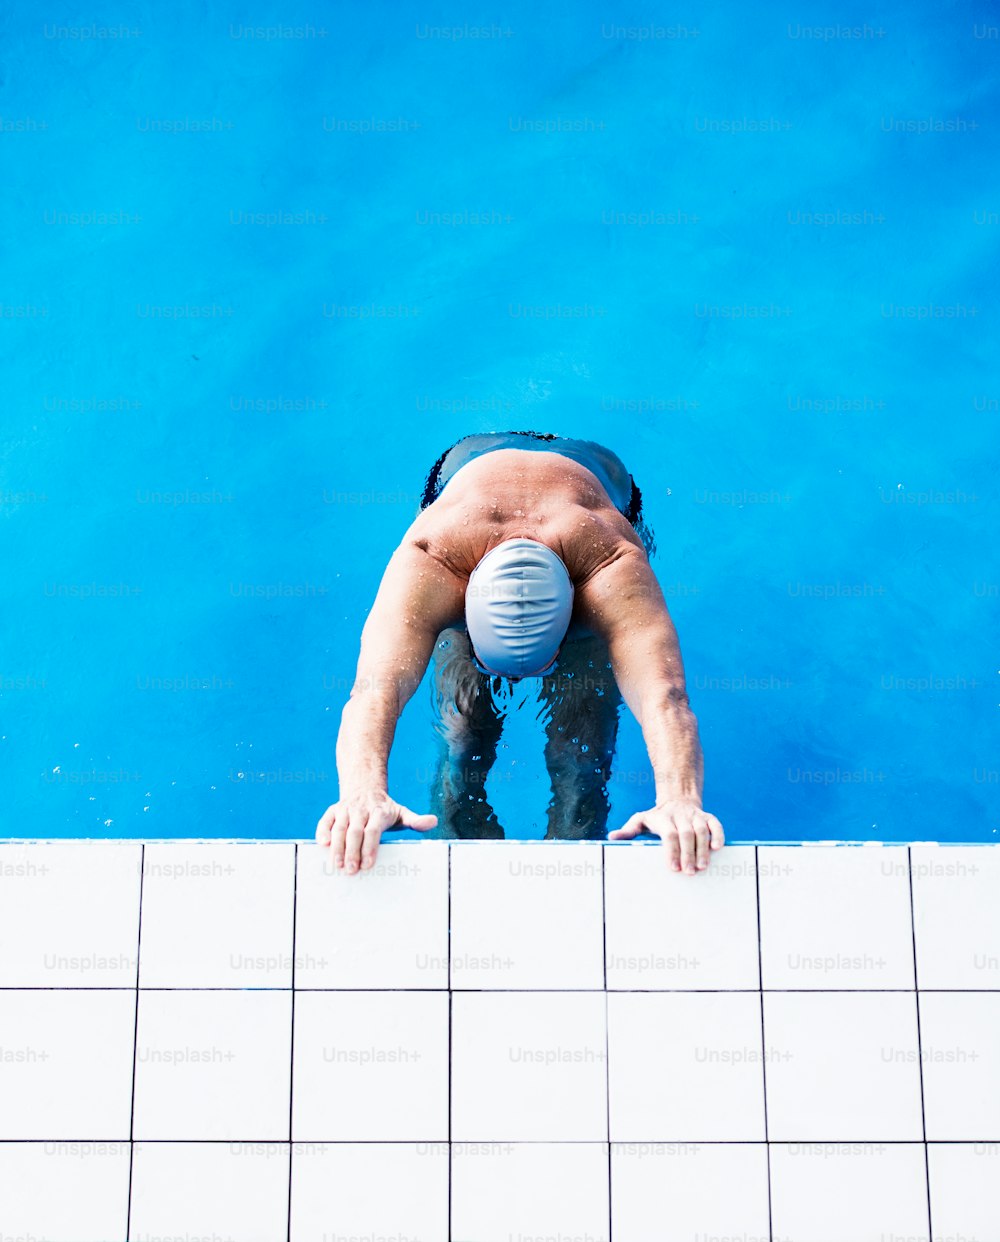 Homem sênior em pé na água em uma piscina coberta. Pensionista ativo desfrutando de esporte. Vista superior.